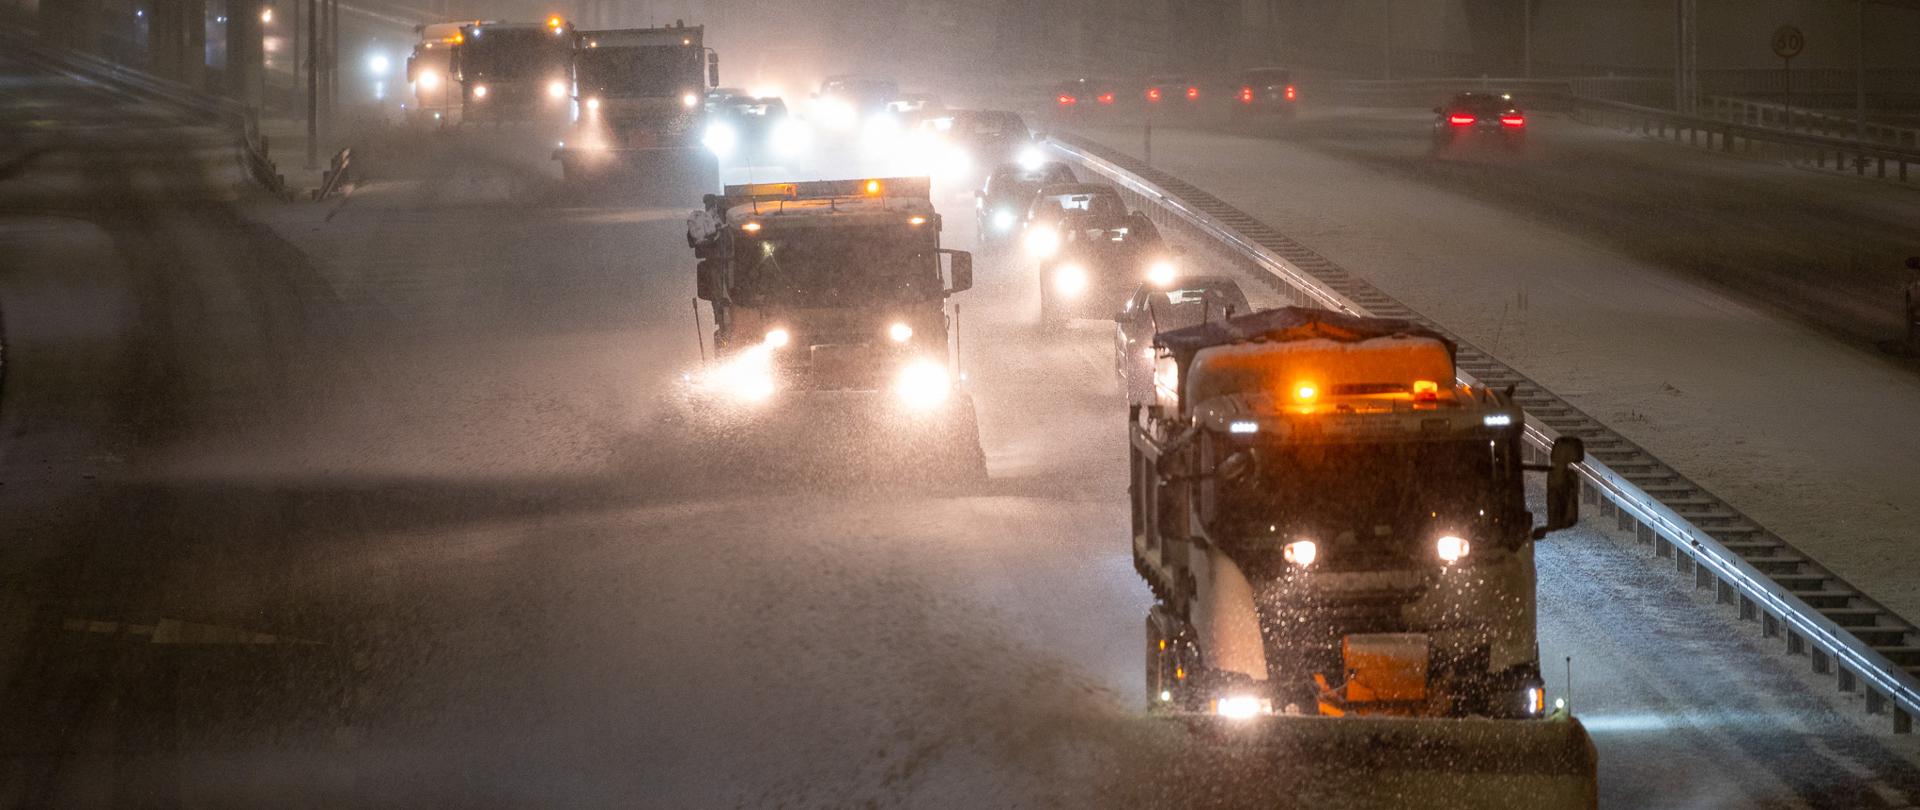 Pługosolarki jadące po zaśnieżonej drodze ekspresowej nocną porą. Za nimi podążają samochody osobowe. Pada śnieg. 